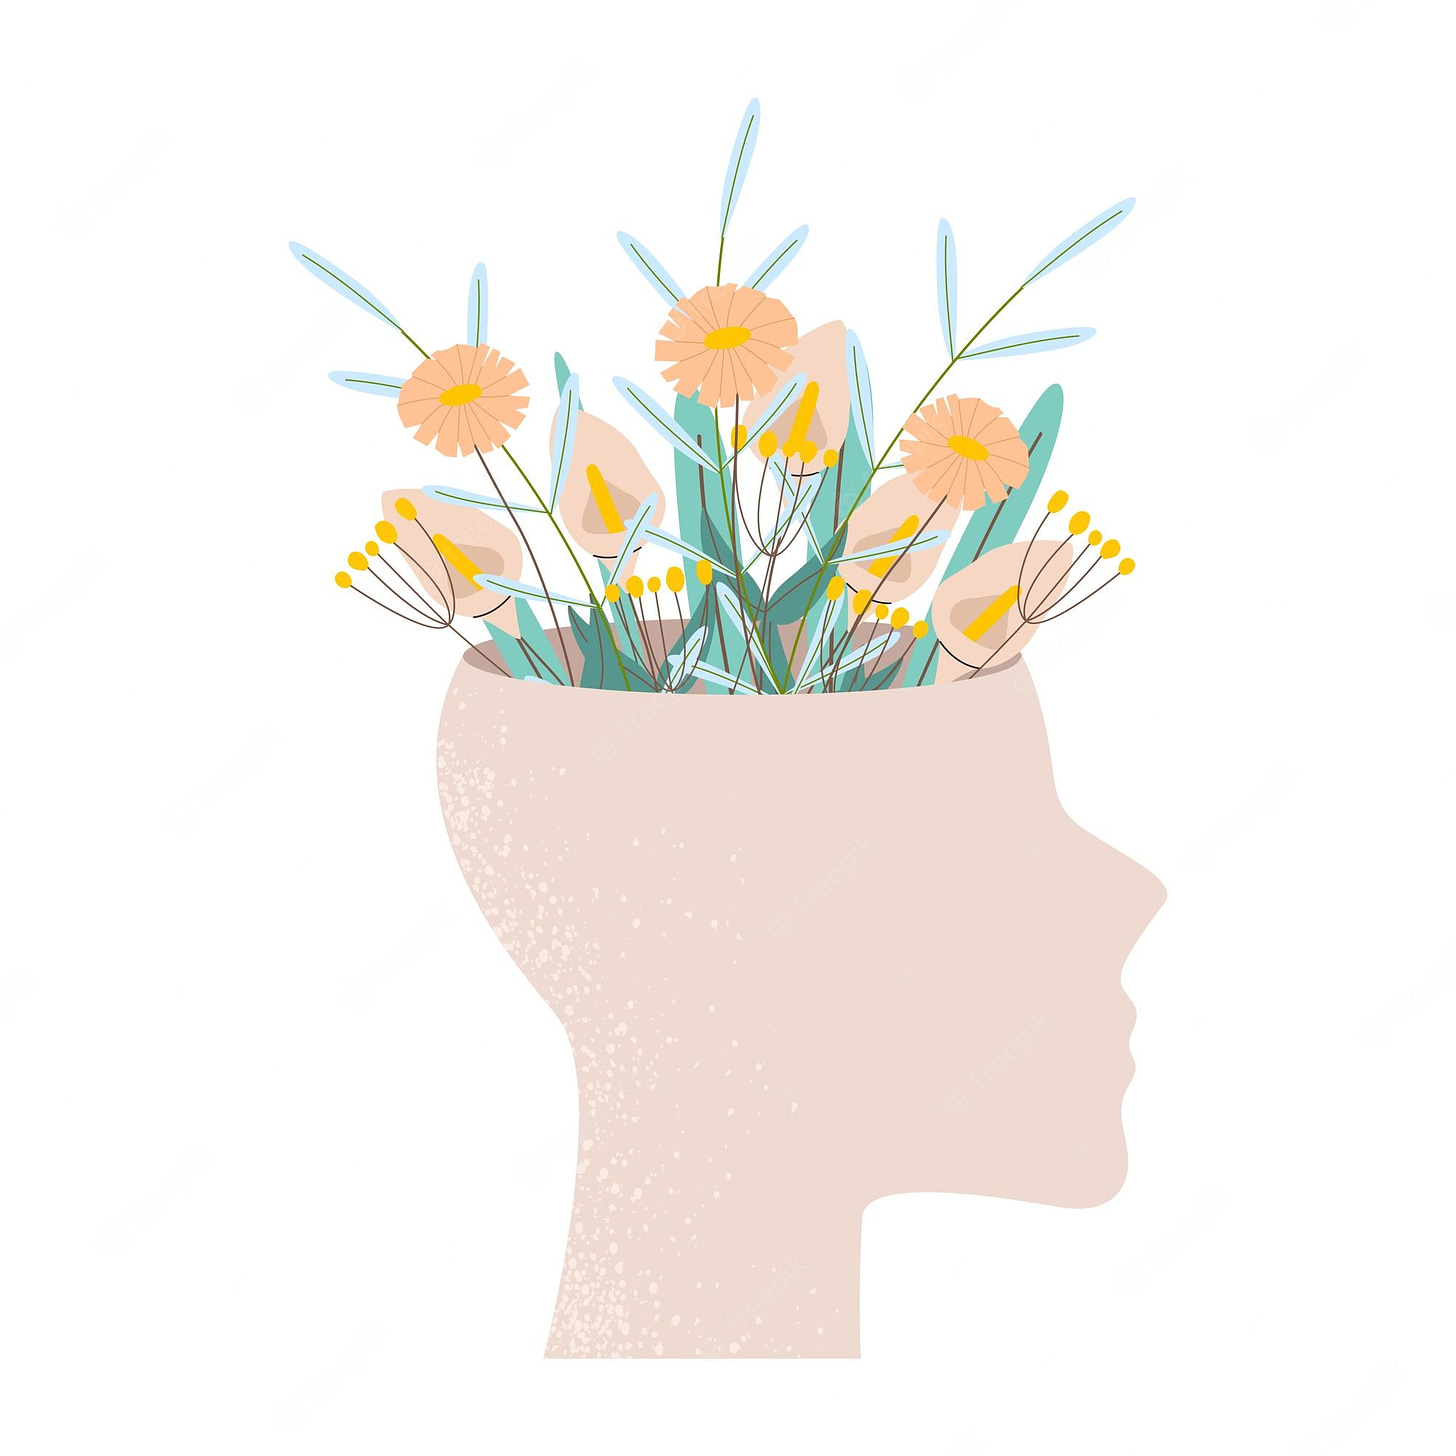 Una cabeza humana de la que crecen flores salud mental pensamiento positivo paz mental | Vector Premium